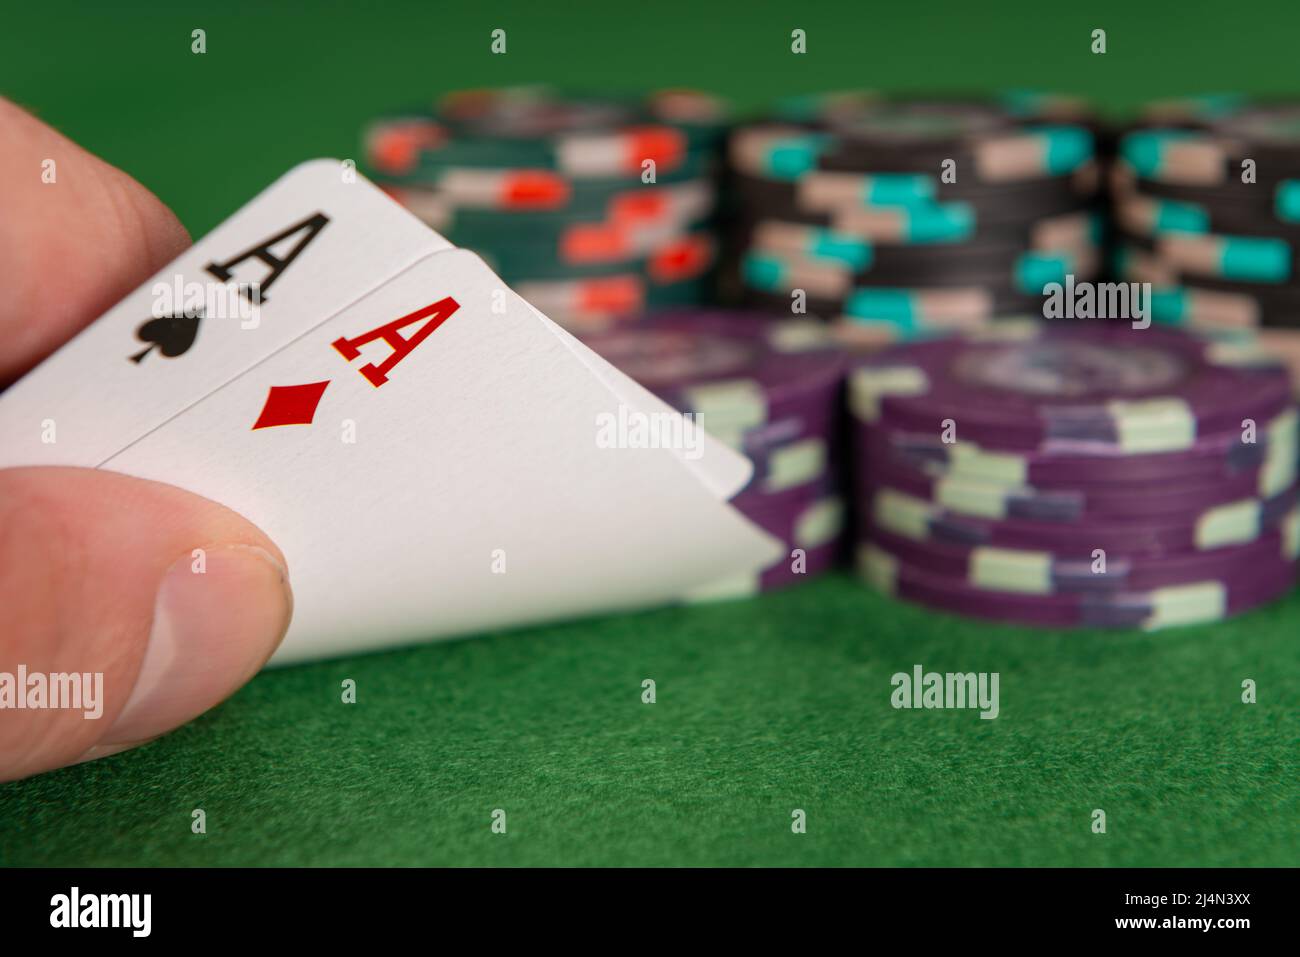 Una mano caucasica solleva l'angolo di due carte da gioco, rivelando che entrambe sono assi. Sullo sfondo ci sono diverse pile di chip. Foto Stock